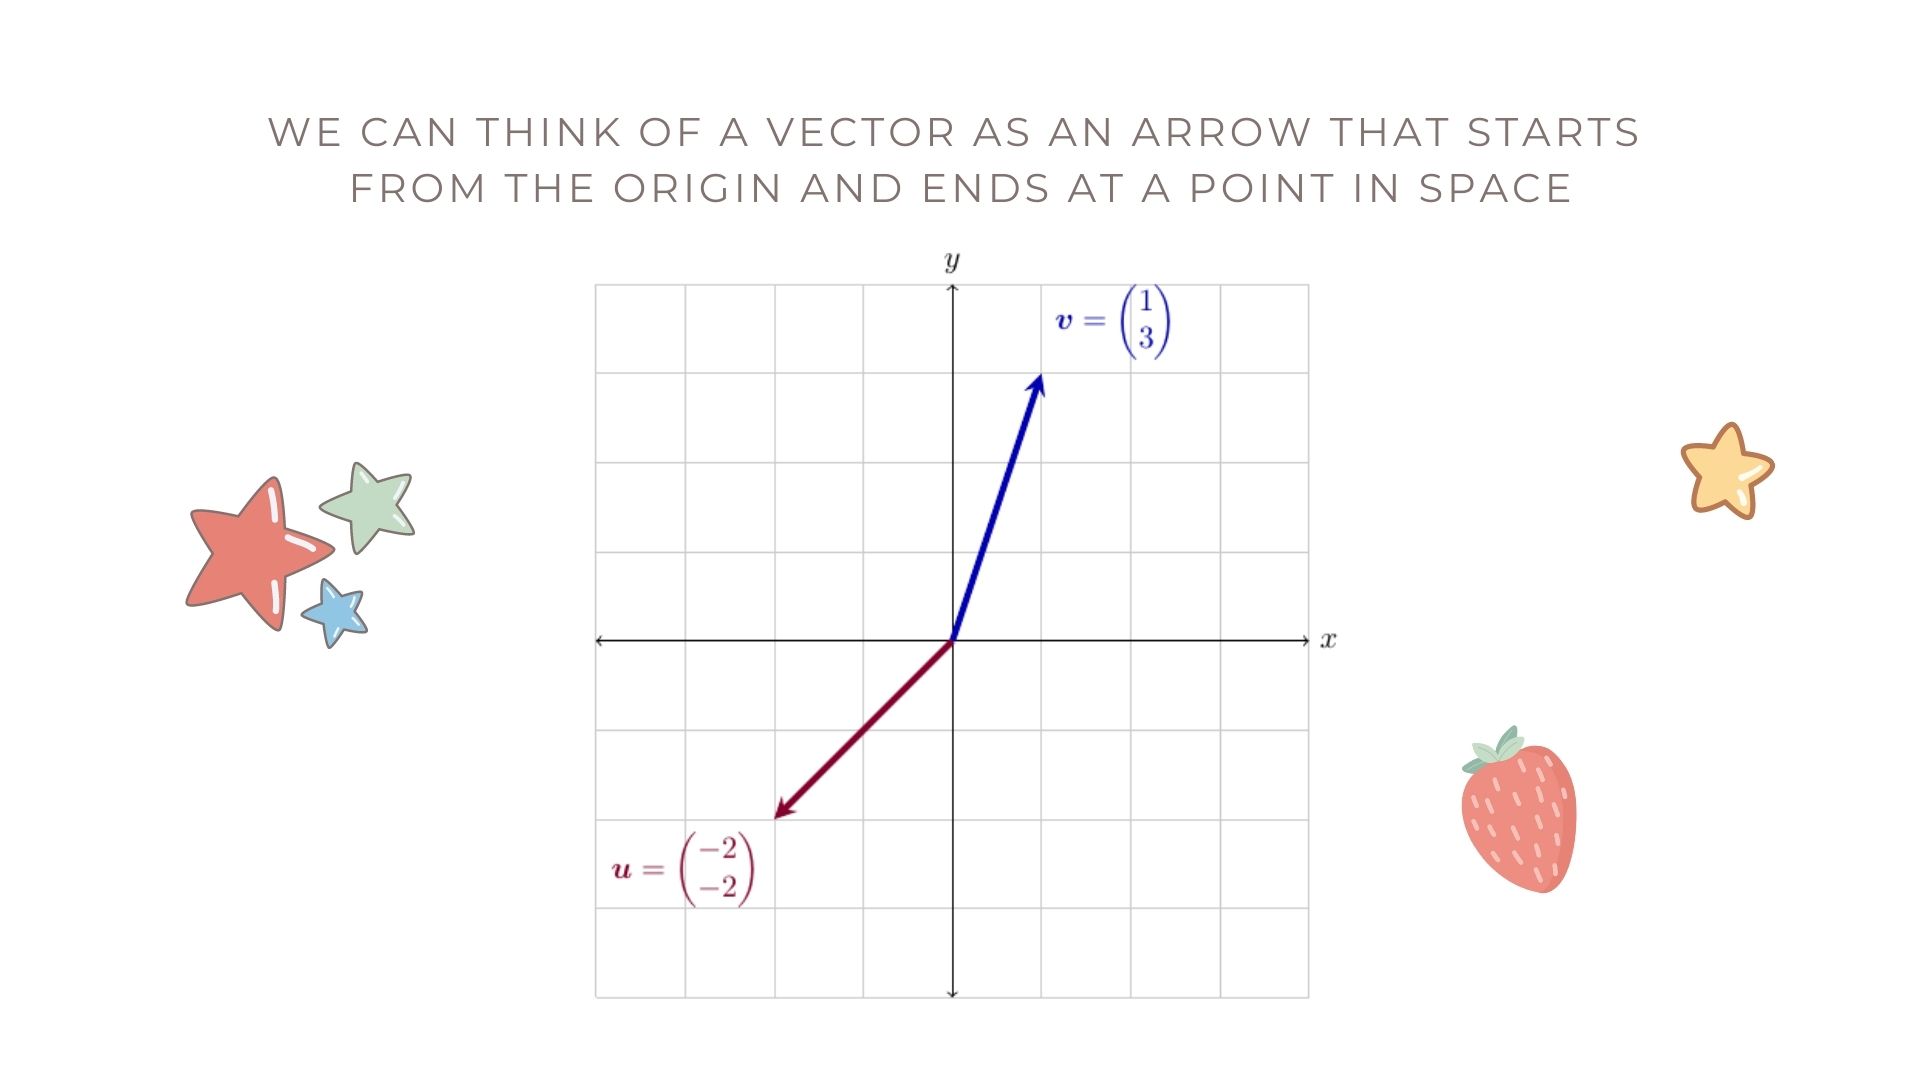 Vectors as arrows from the origin